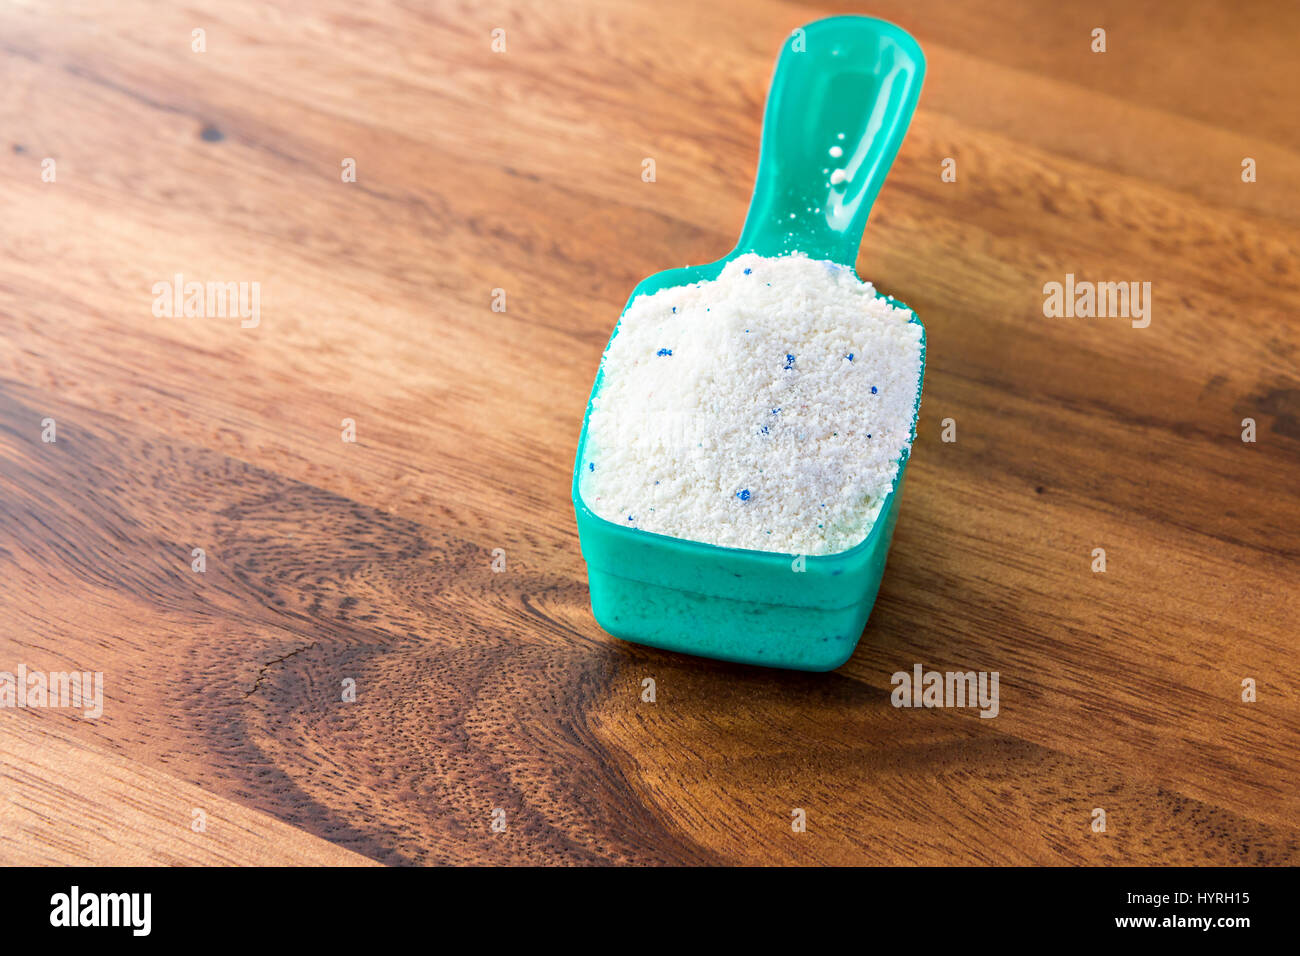 https://c8.alamy.com/comp/HYRH15/detergent-or-washing-powder-in-measuring-spoon-HYRH15.jpg